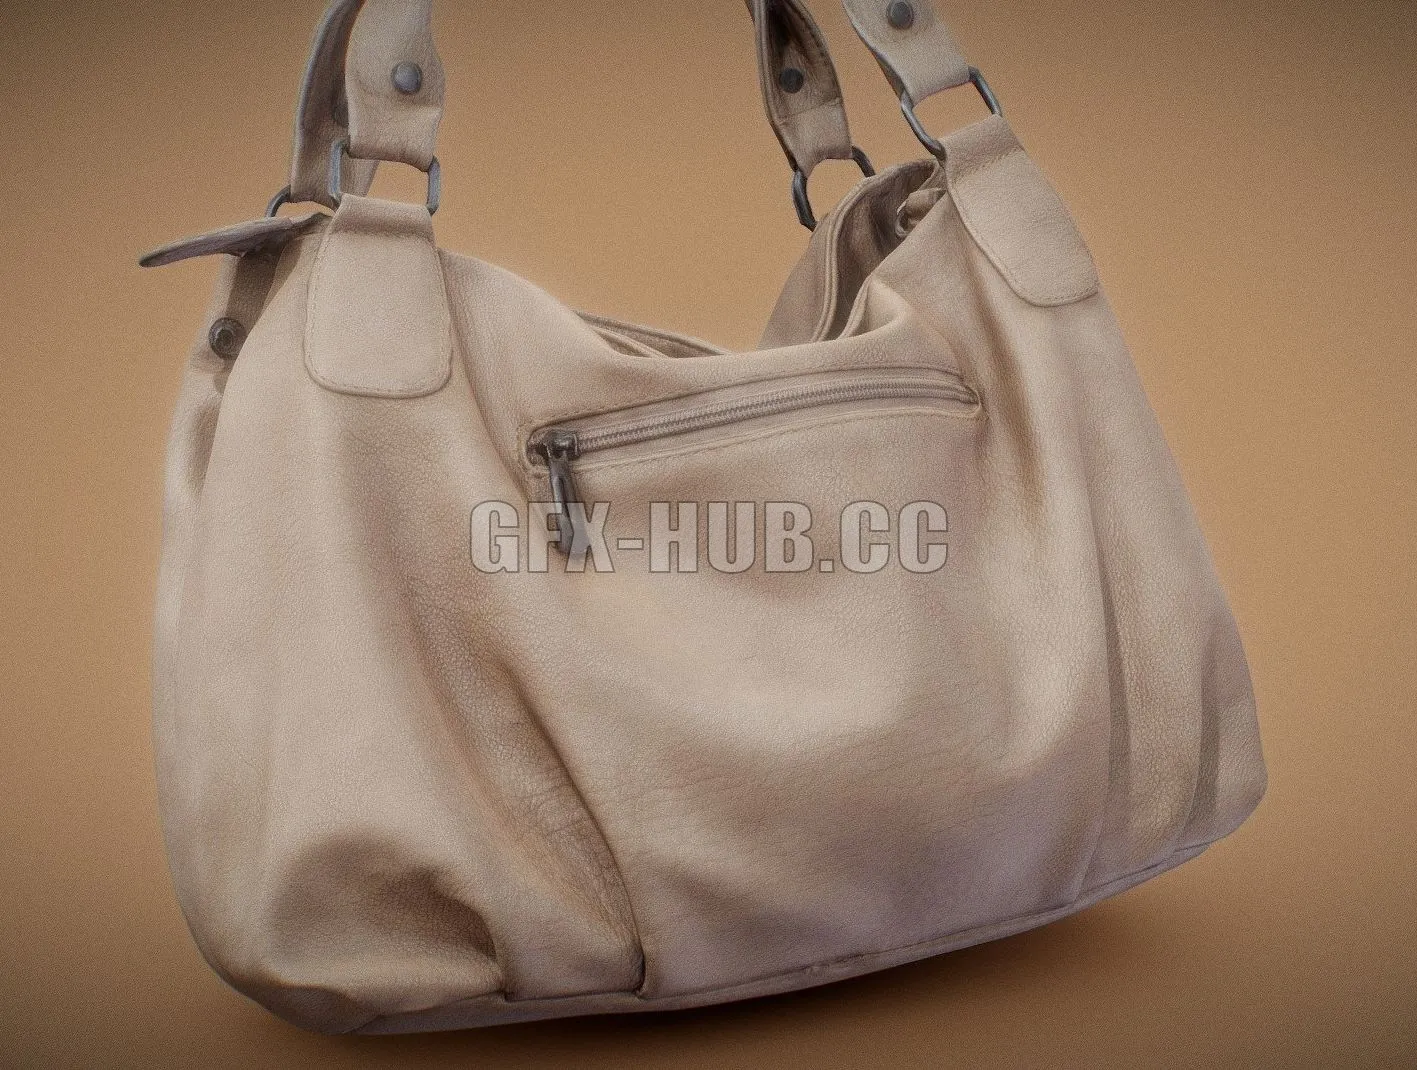 PBR Game 3D Model – Light Brown Leather Handbag